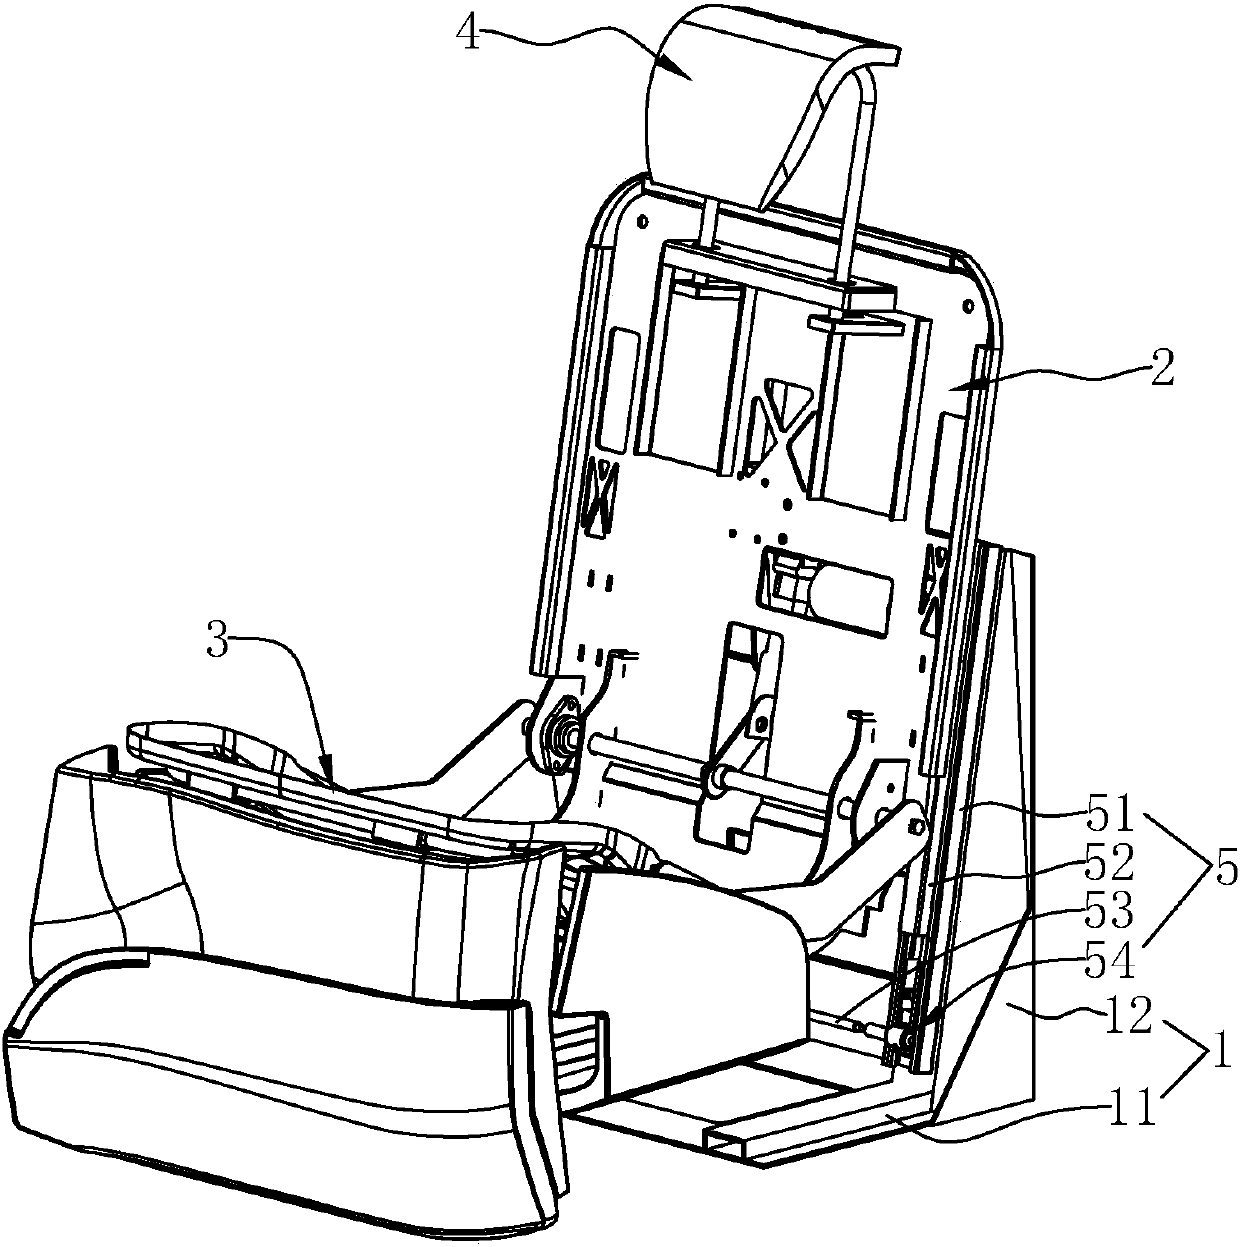 Folding type seat